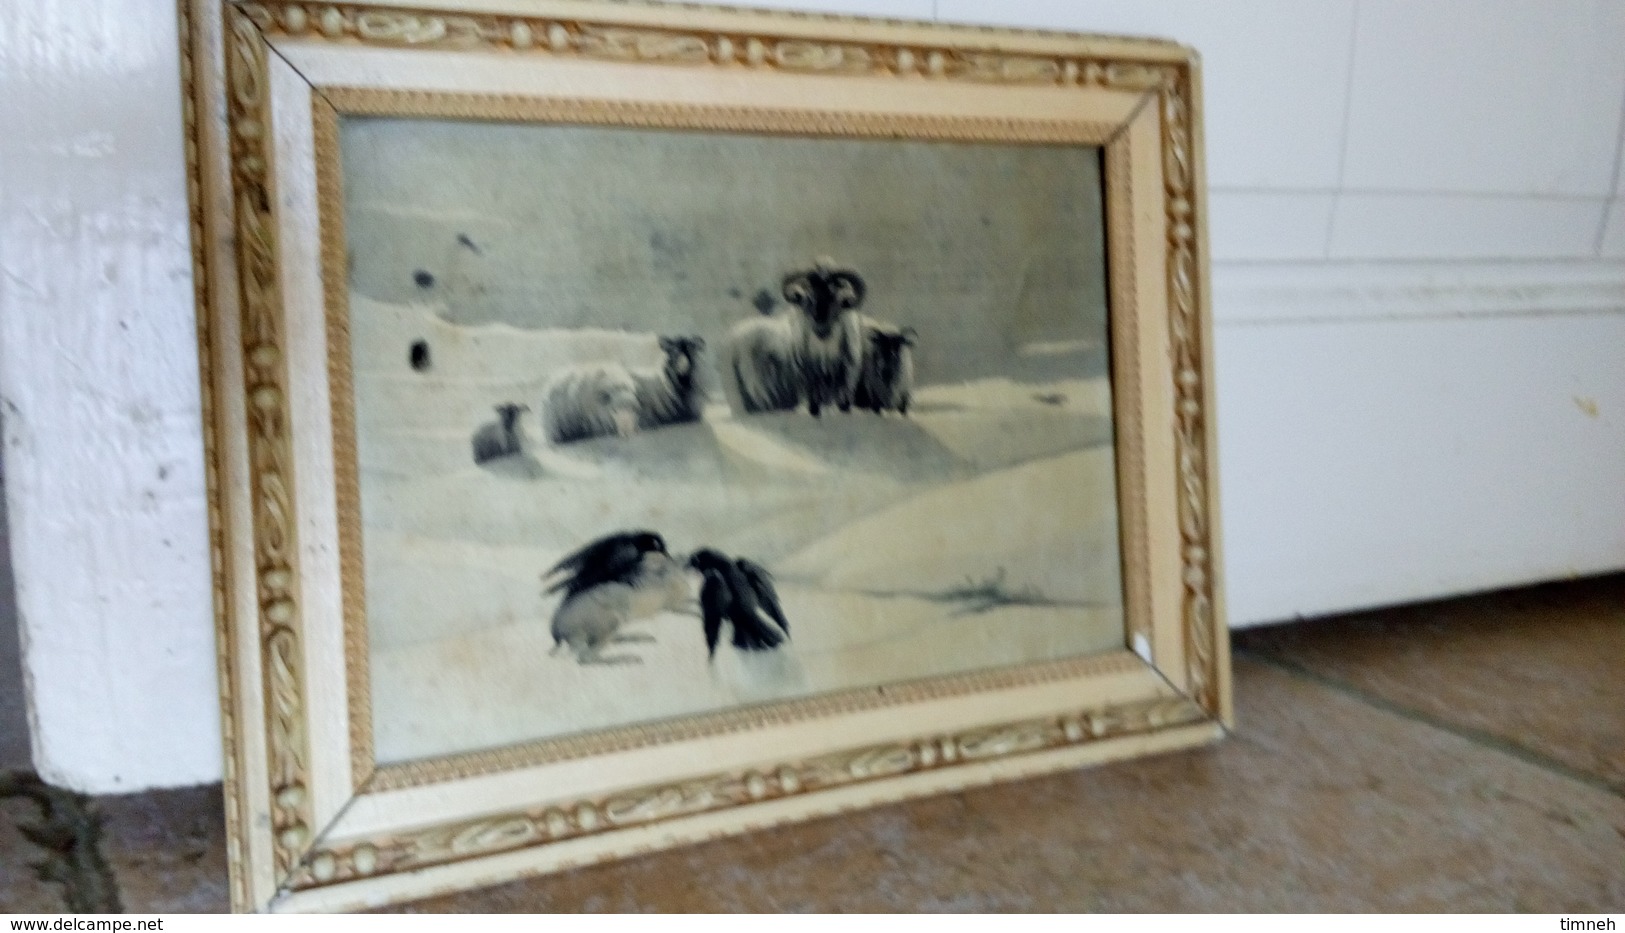 Tableau en SOIE tissée - Scène animalière - Oiseaux Lièvre Troupeau MOUFLONS dans la neige cadre bois - non signé